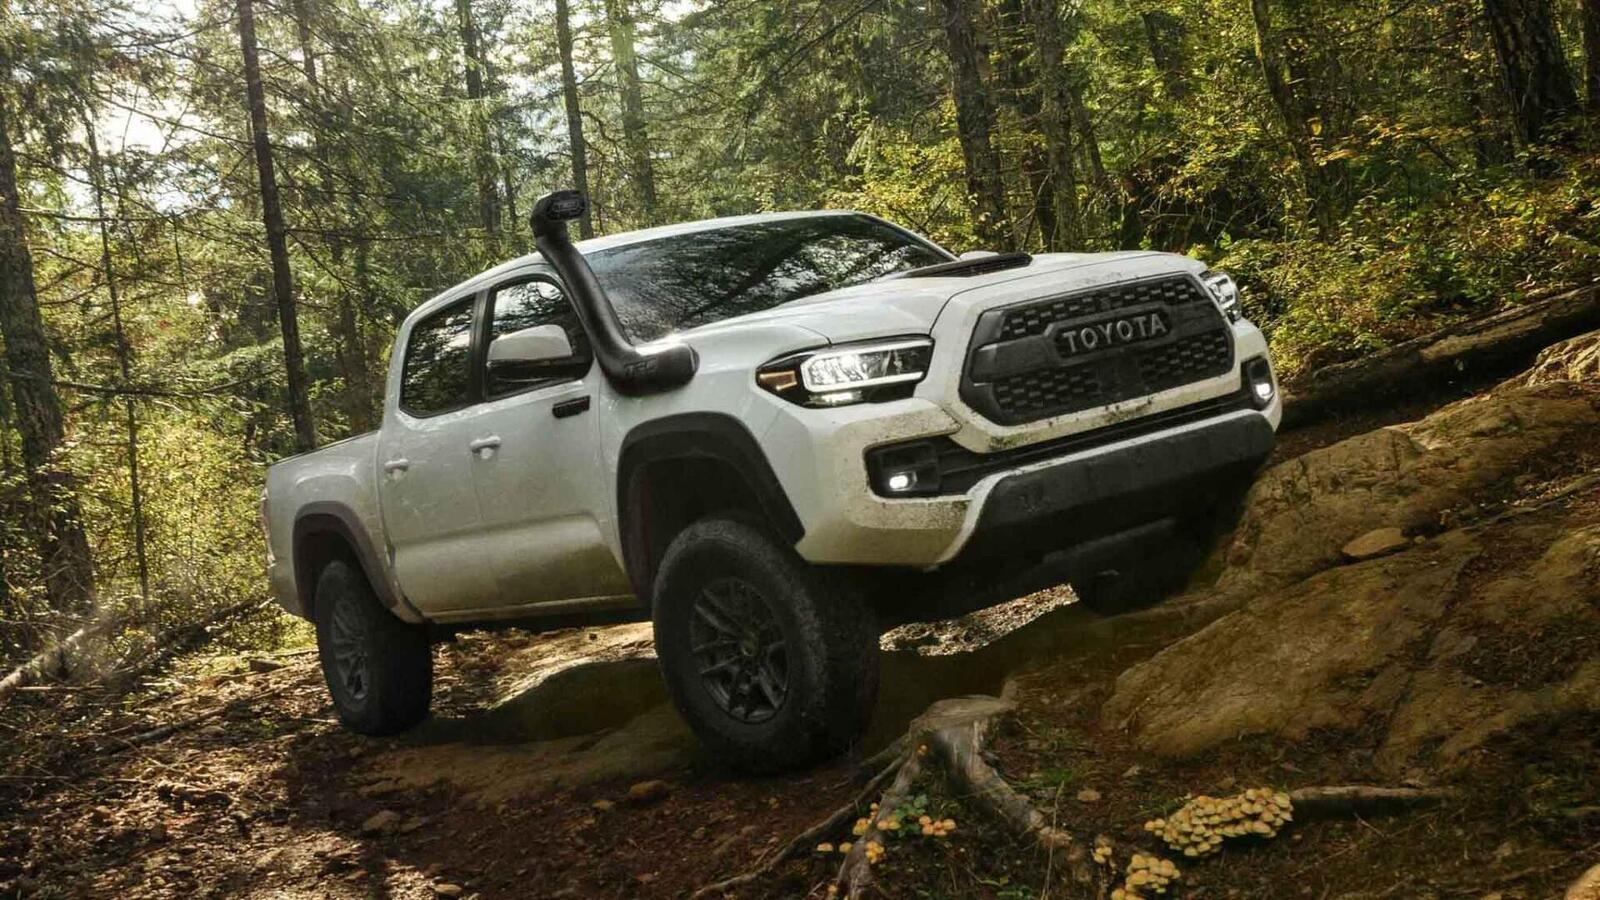 Xem trước bán tải Toyota Tacoma 2020 mới trước ngày ra mắt đối thủ đáng gờm Ford Ranger - Hình 1